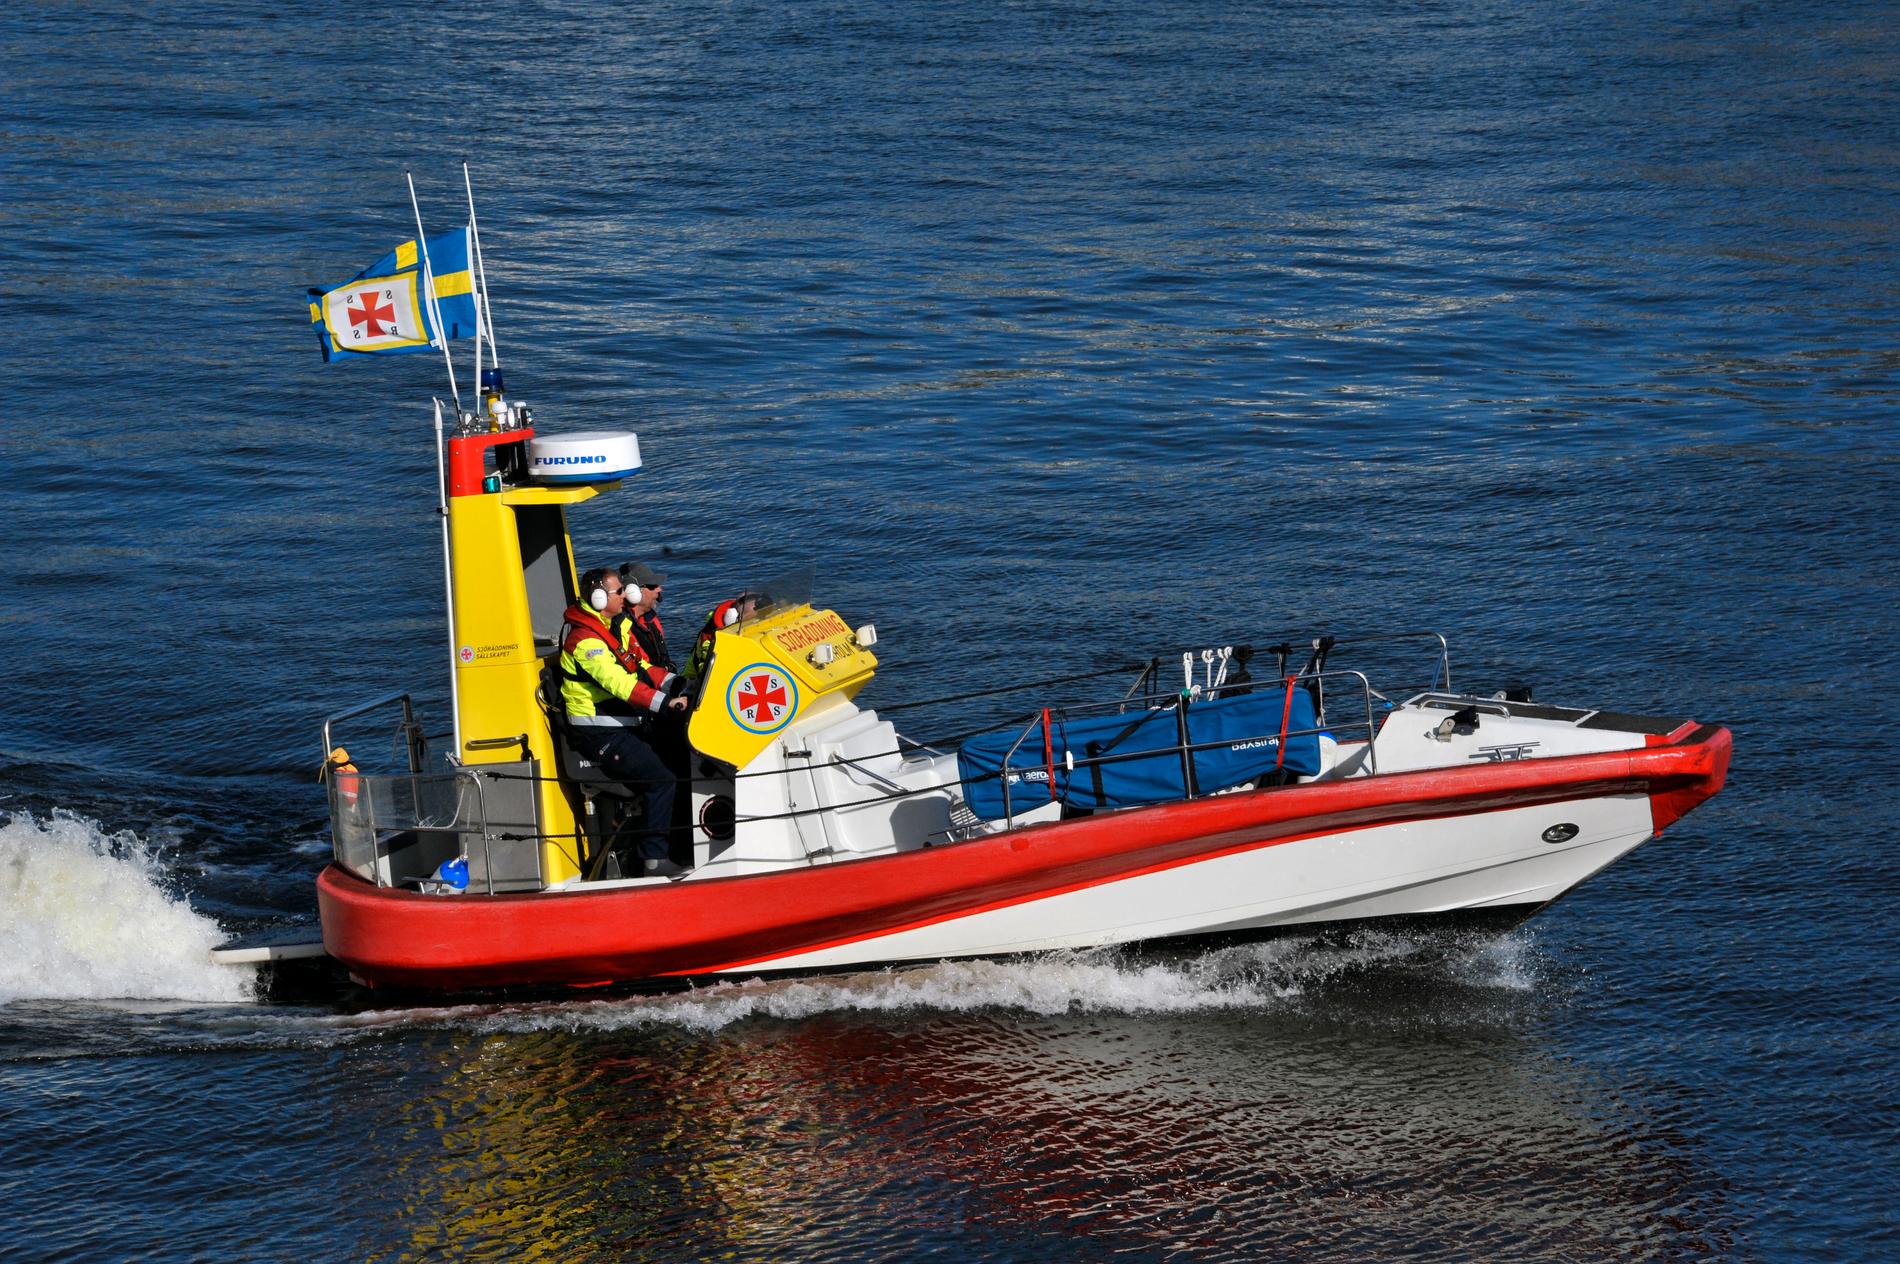 En av sjöräddningens båtar. (Arkivbild).